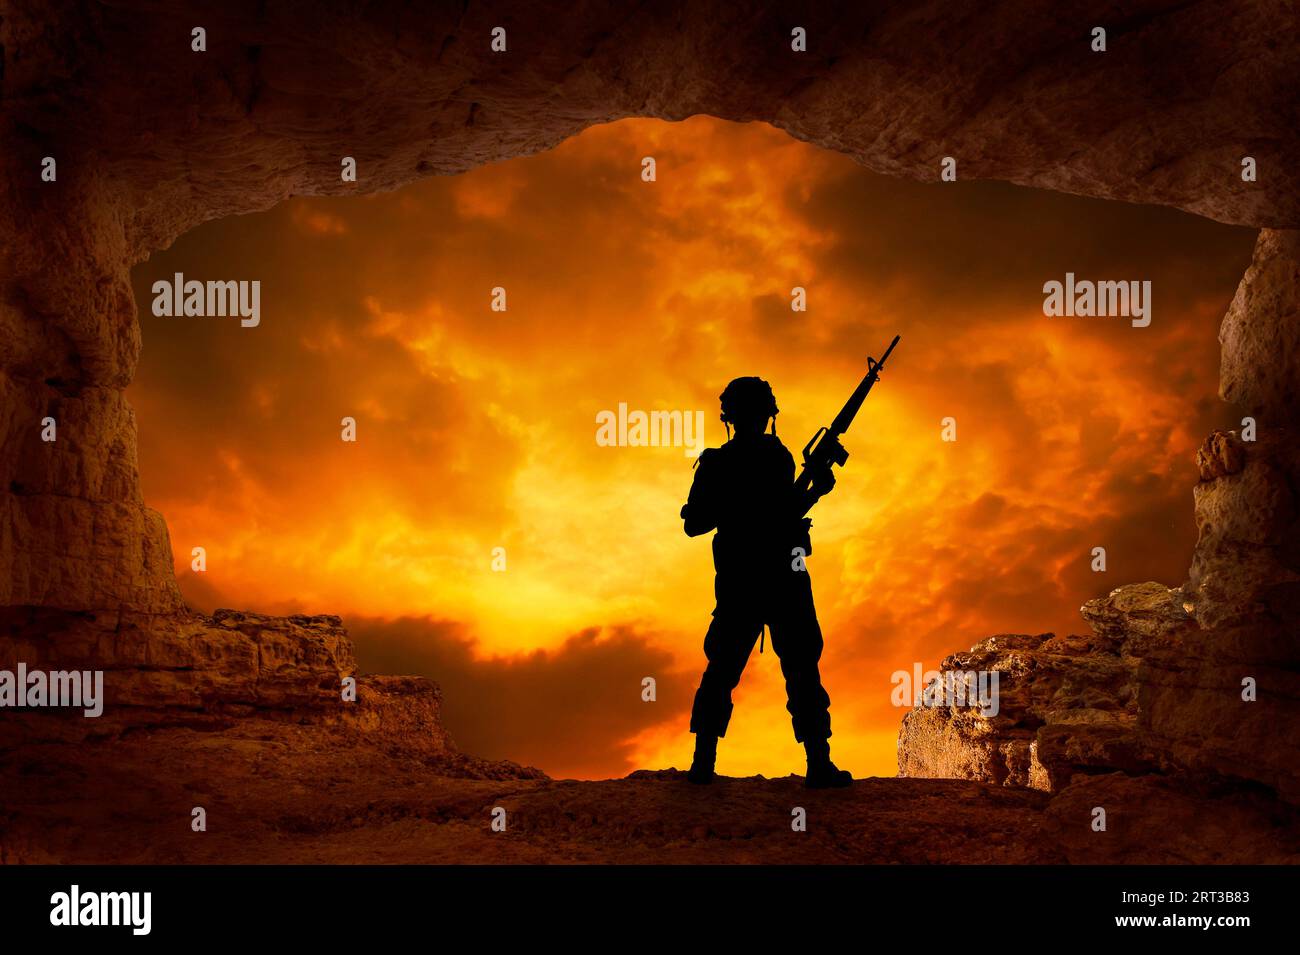 soldato con una pistola in silhouette al bordo di una caverna Foto Stock